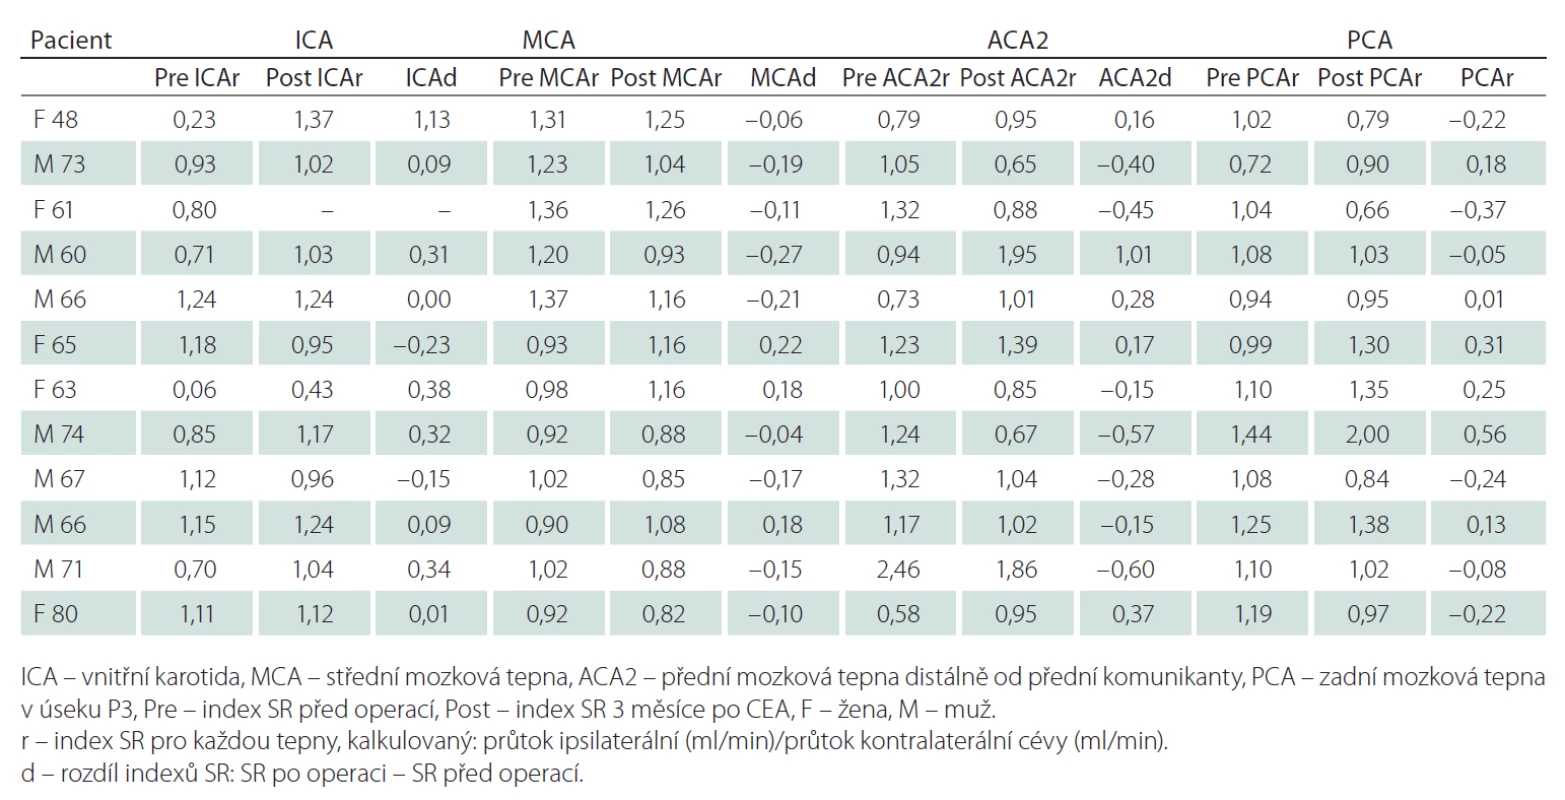 Indexy SR (průtok ipsilaterální/kontralaterální cévou) před a tři měsíce po CEA.